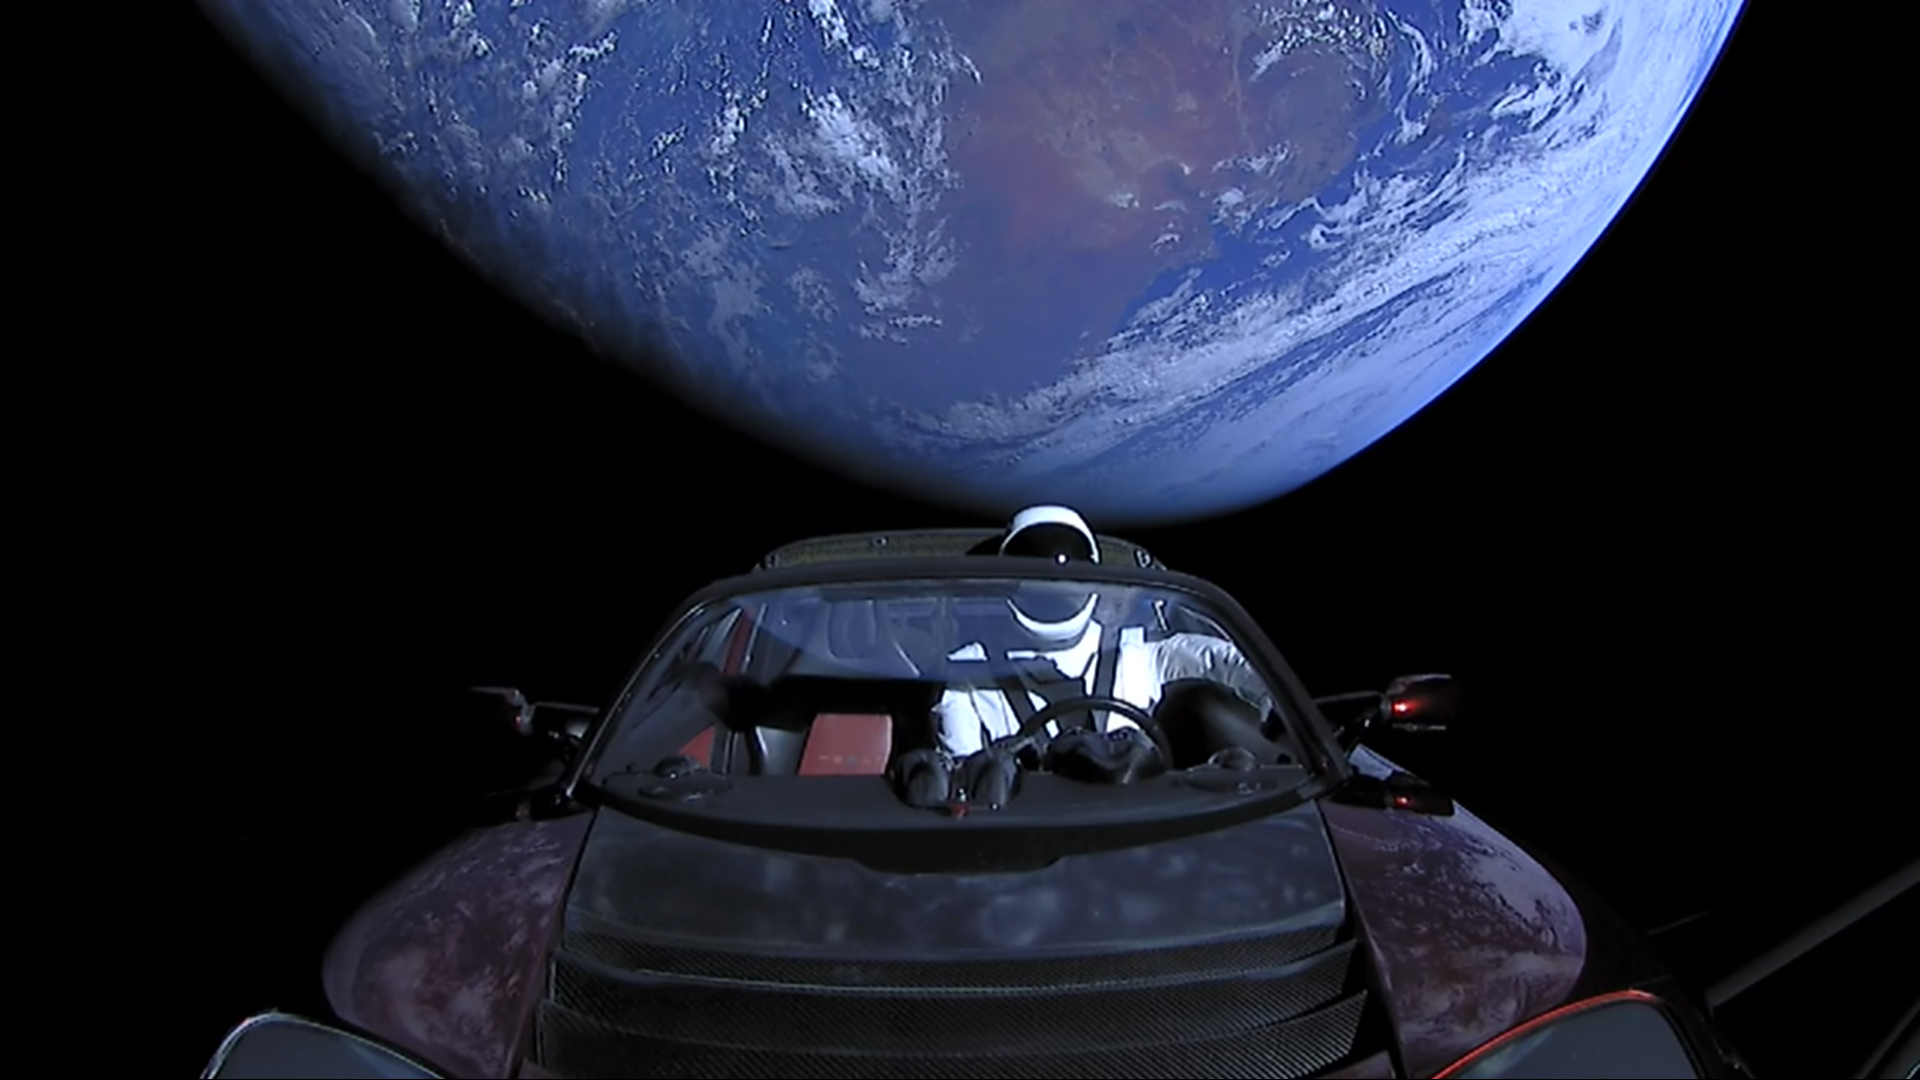 La voiture spatiale Tesla Roadster a déjà parcouru 3 208 624 326 km